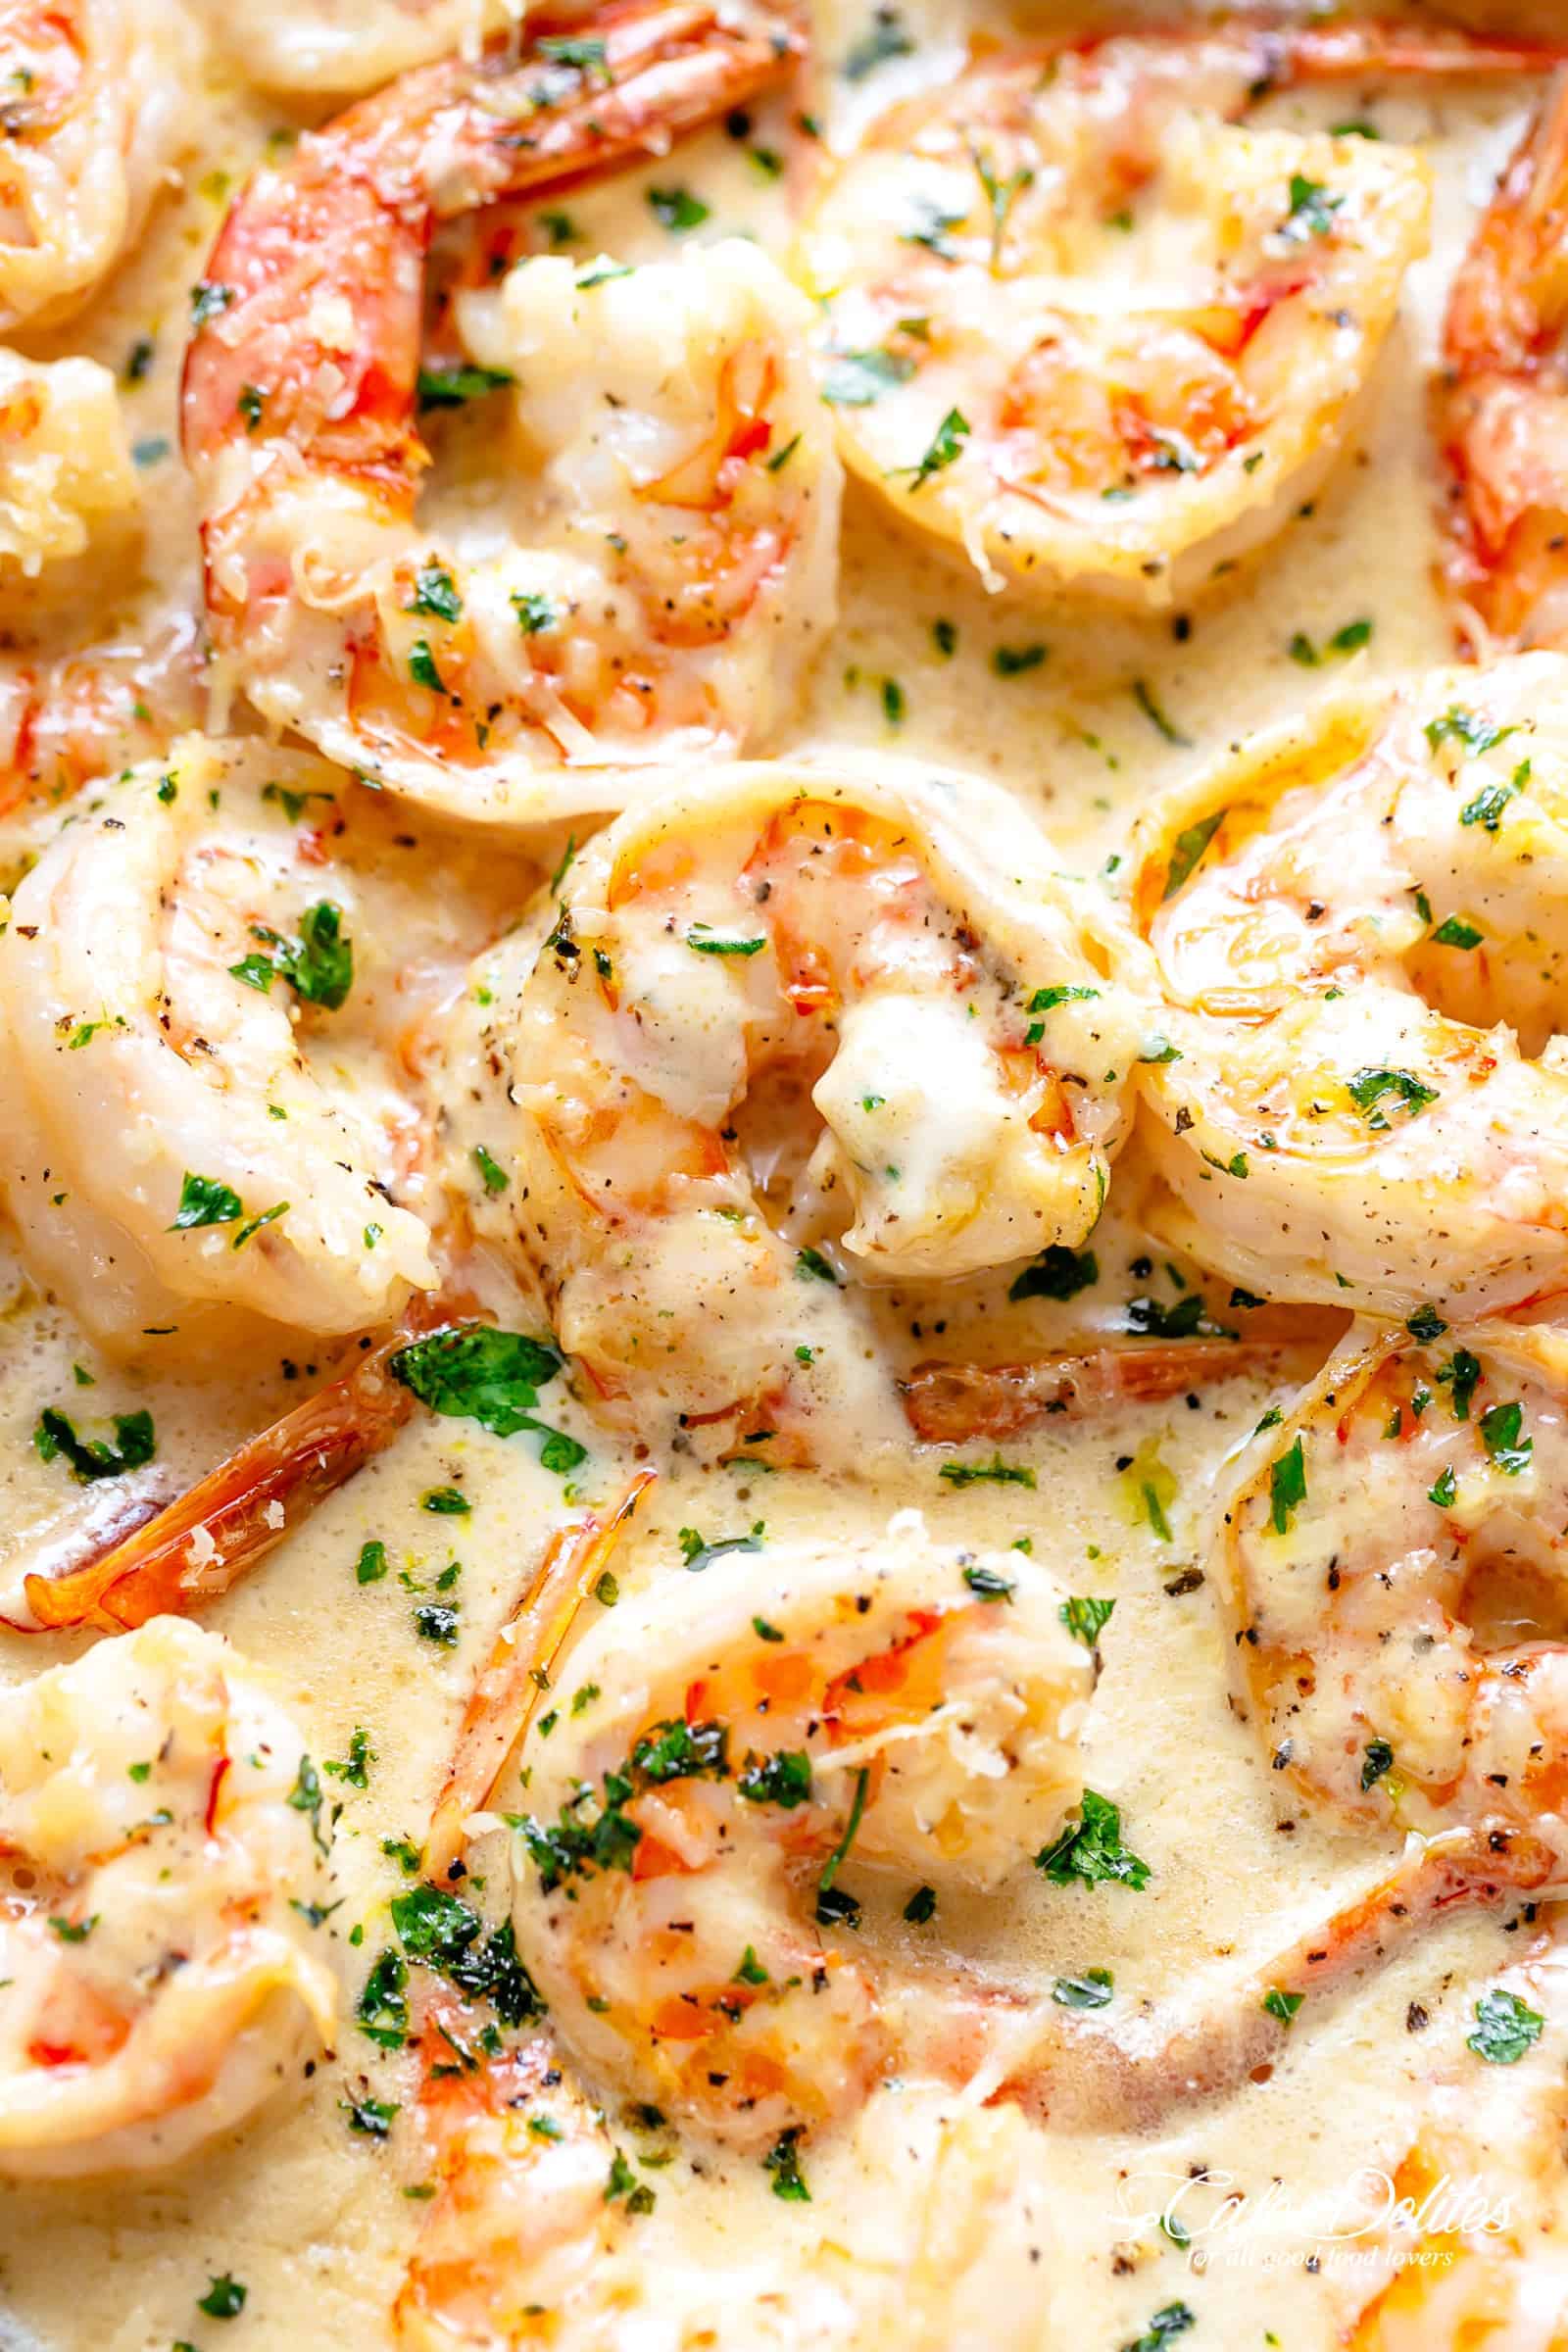 https://cafedelites.com/wp-content/uploads/2018/06/Creamy-Garlic-Parmesan-Shrimp-Alfredo-IMAGE-2.jpg